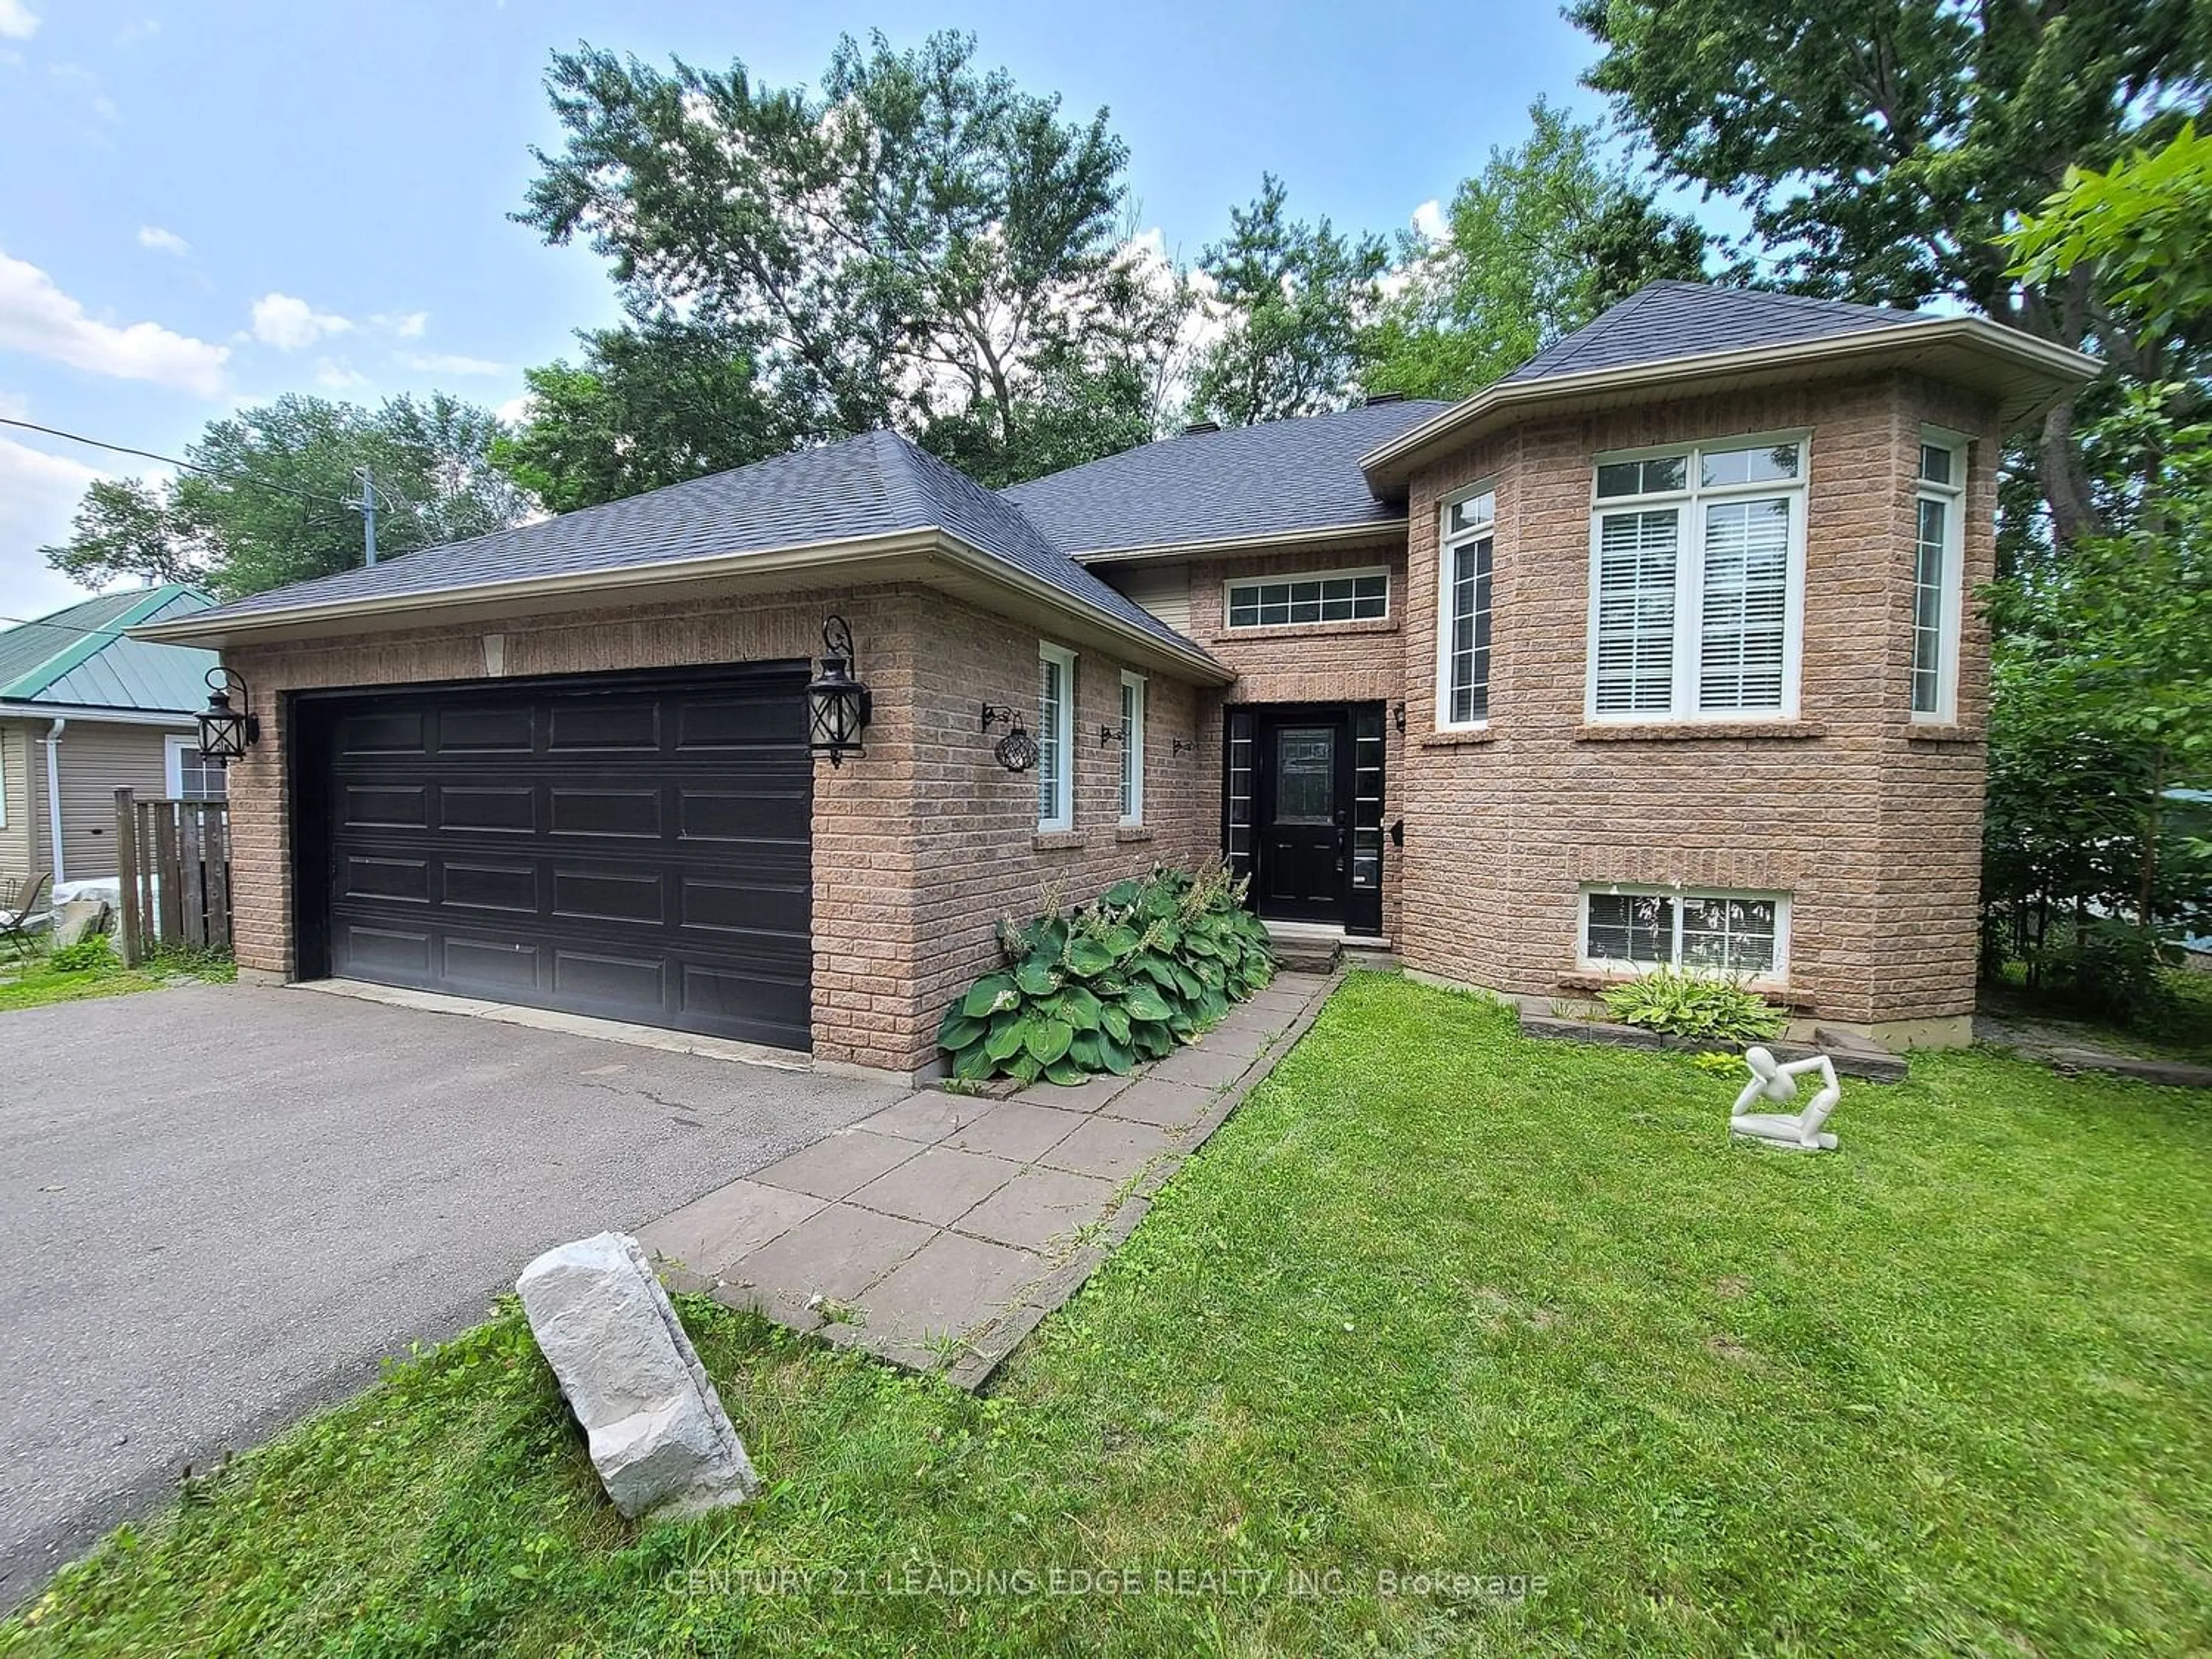 Home with brick exterior material for 266 Cedarholme Ave, Georgina Ontario L4P 2W4